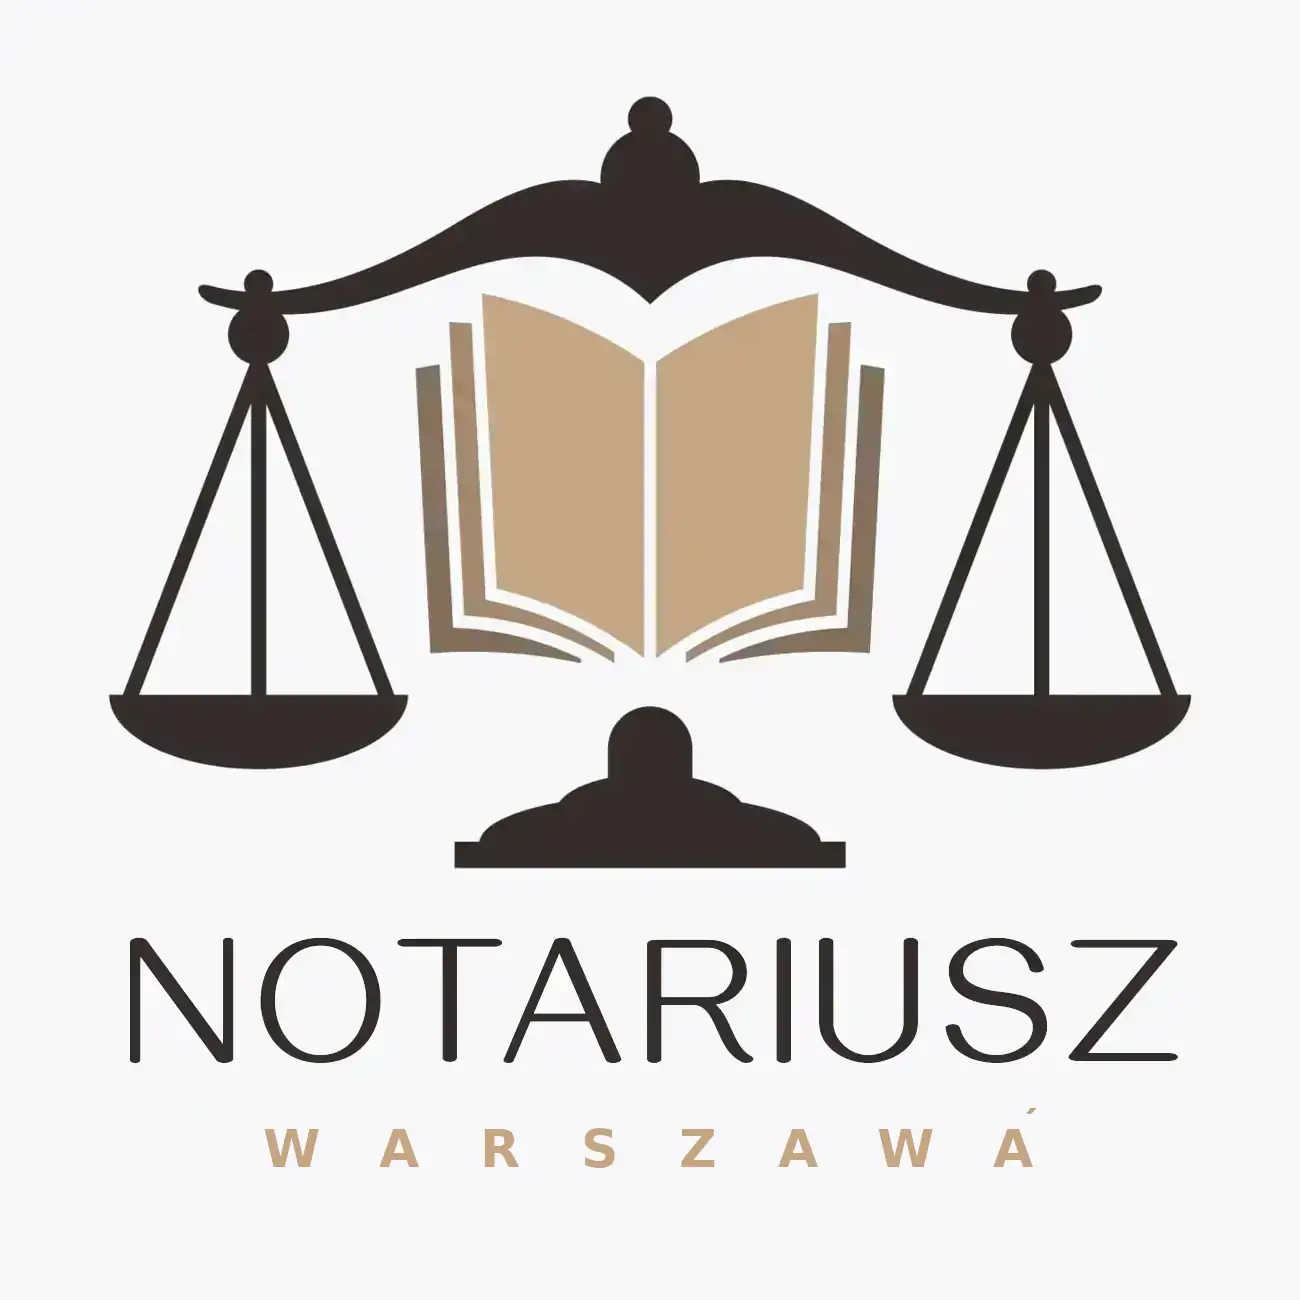 notariusz warszawa